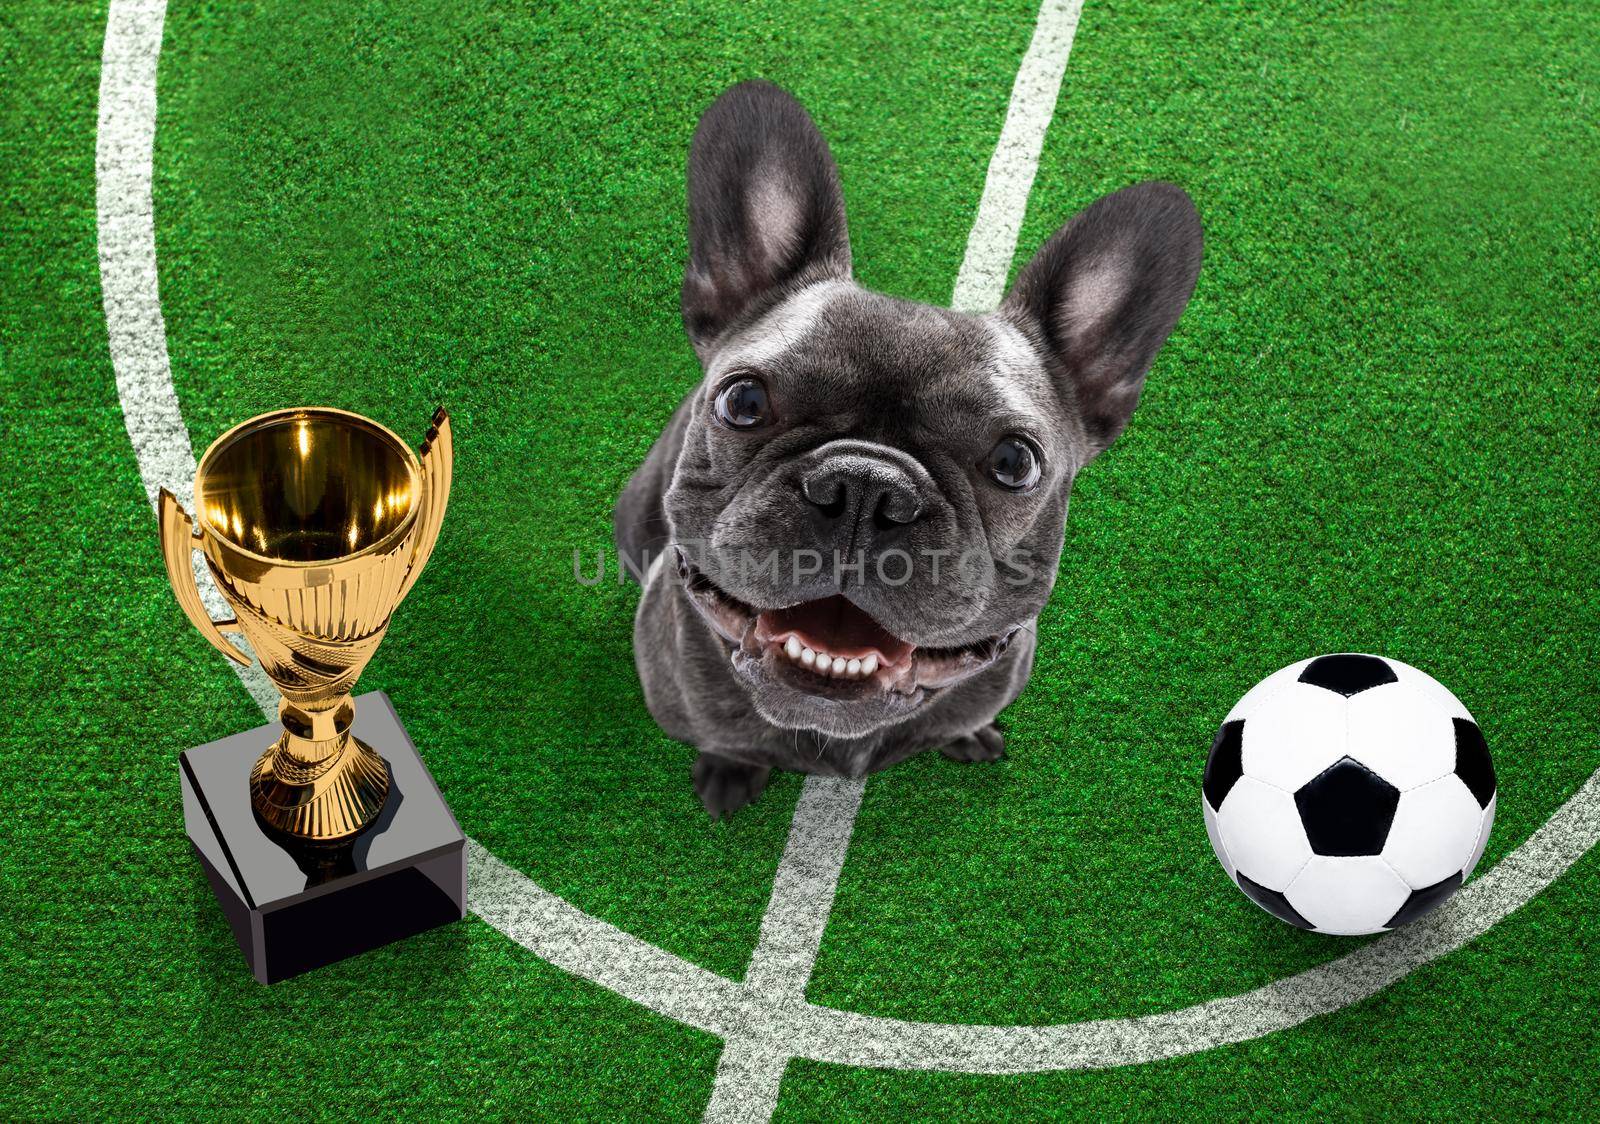 soccer player dog by Brosch